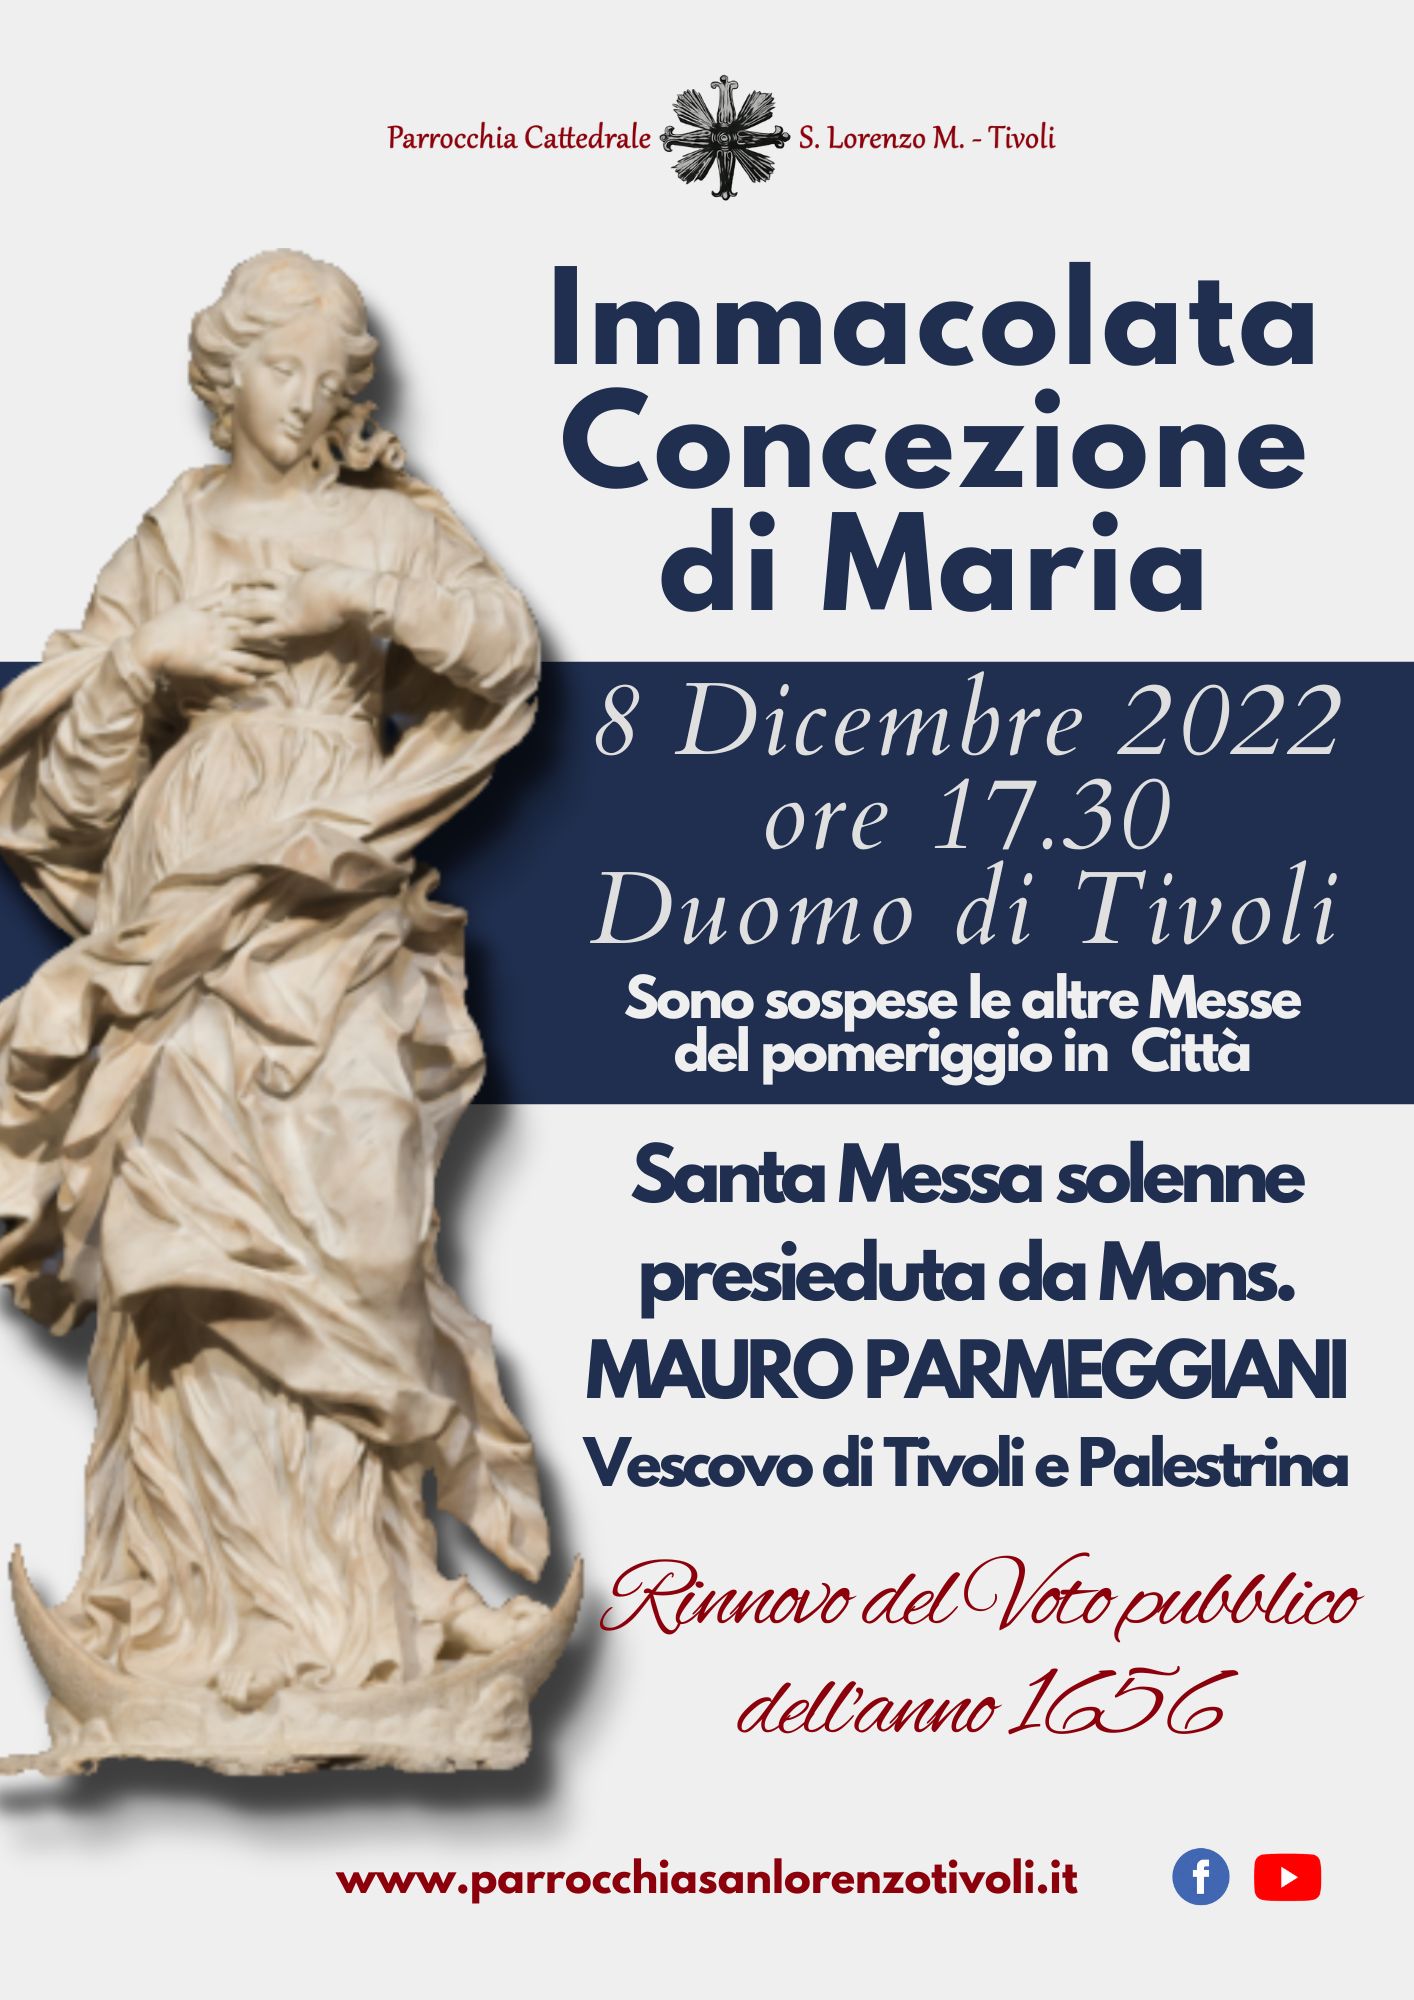 Festa dell’Immacolata in Duomo l’8 dicembre 2022 alle 17.30 con il Vescovo